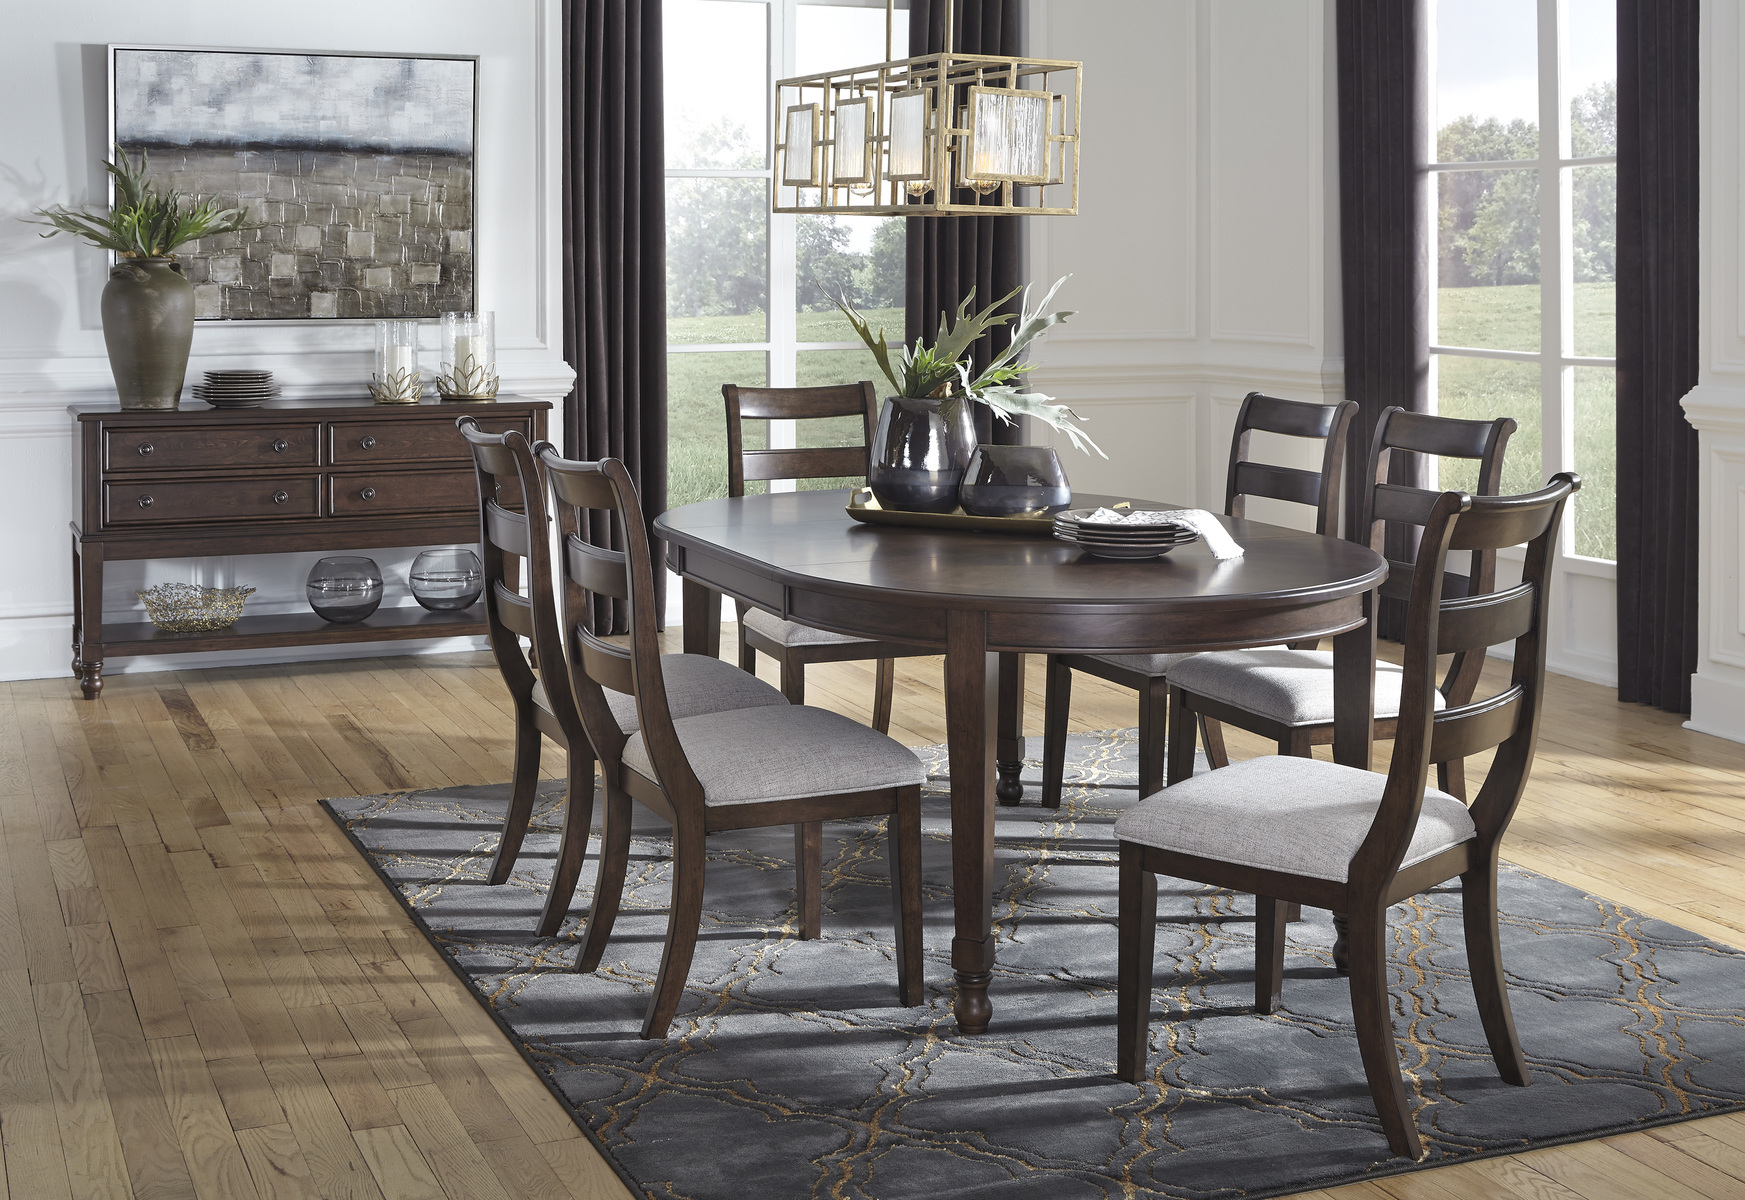 ashley furniture formal dining sets